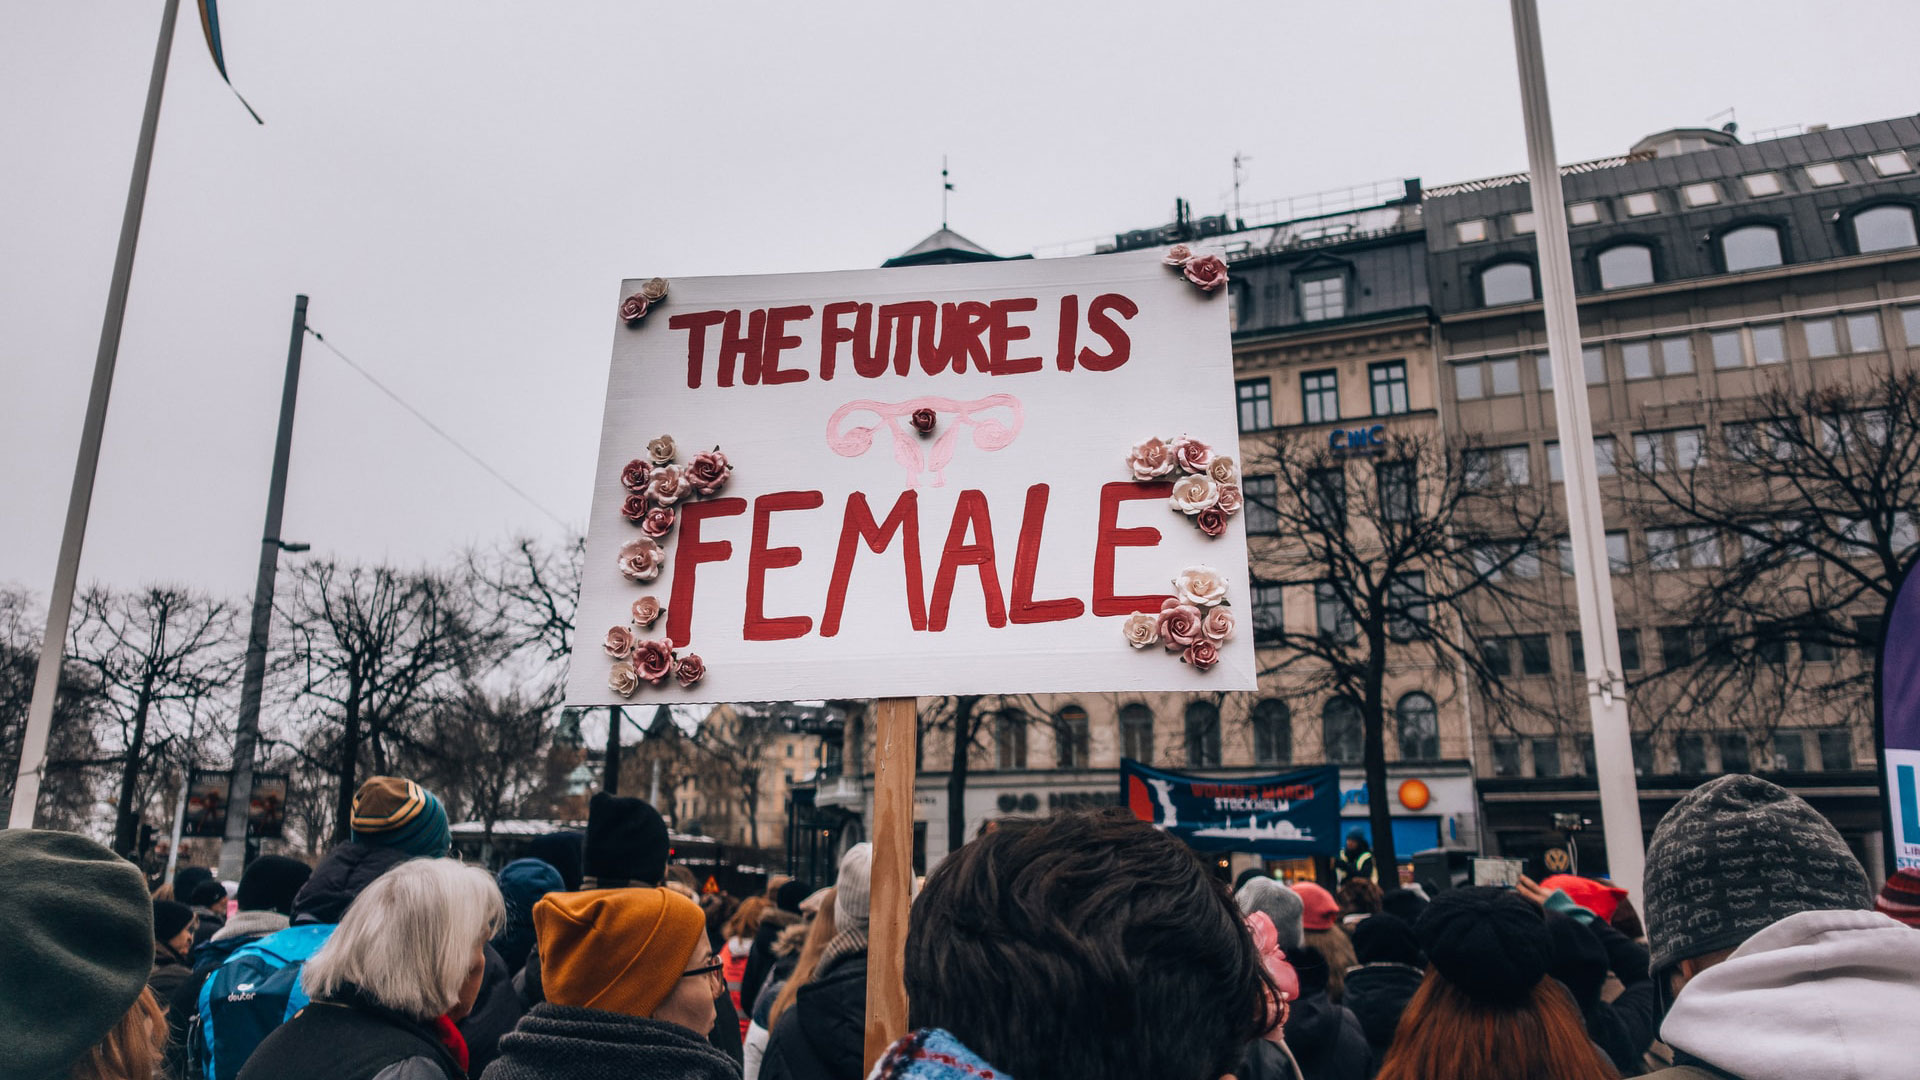 cartaz a dizer "The Future is Female"